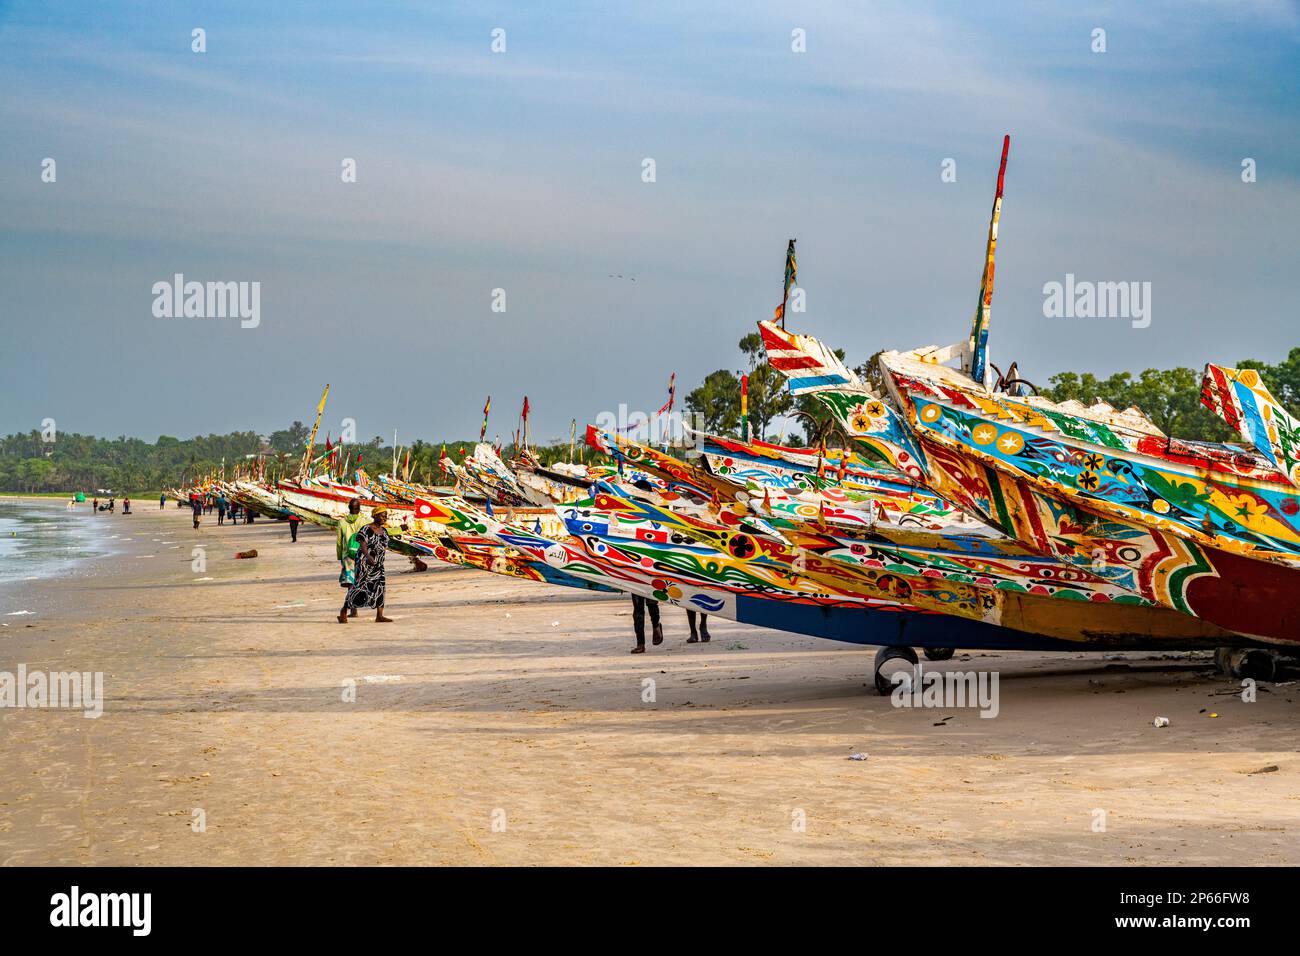 Bateaux de pêche colorés, Cap Skirring, Casamance, Sénégal, Afrique de l'Ouest, Afrique Banque D'Images